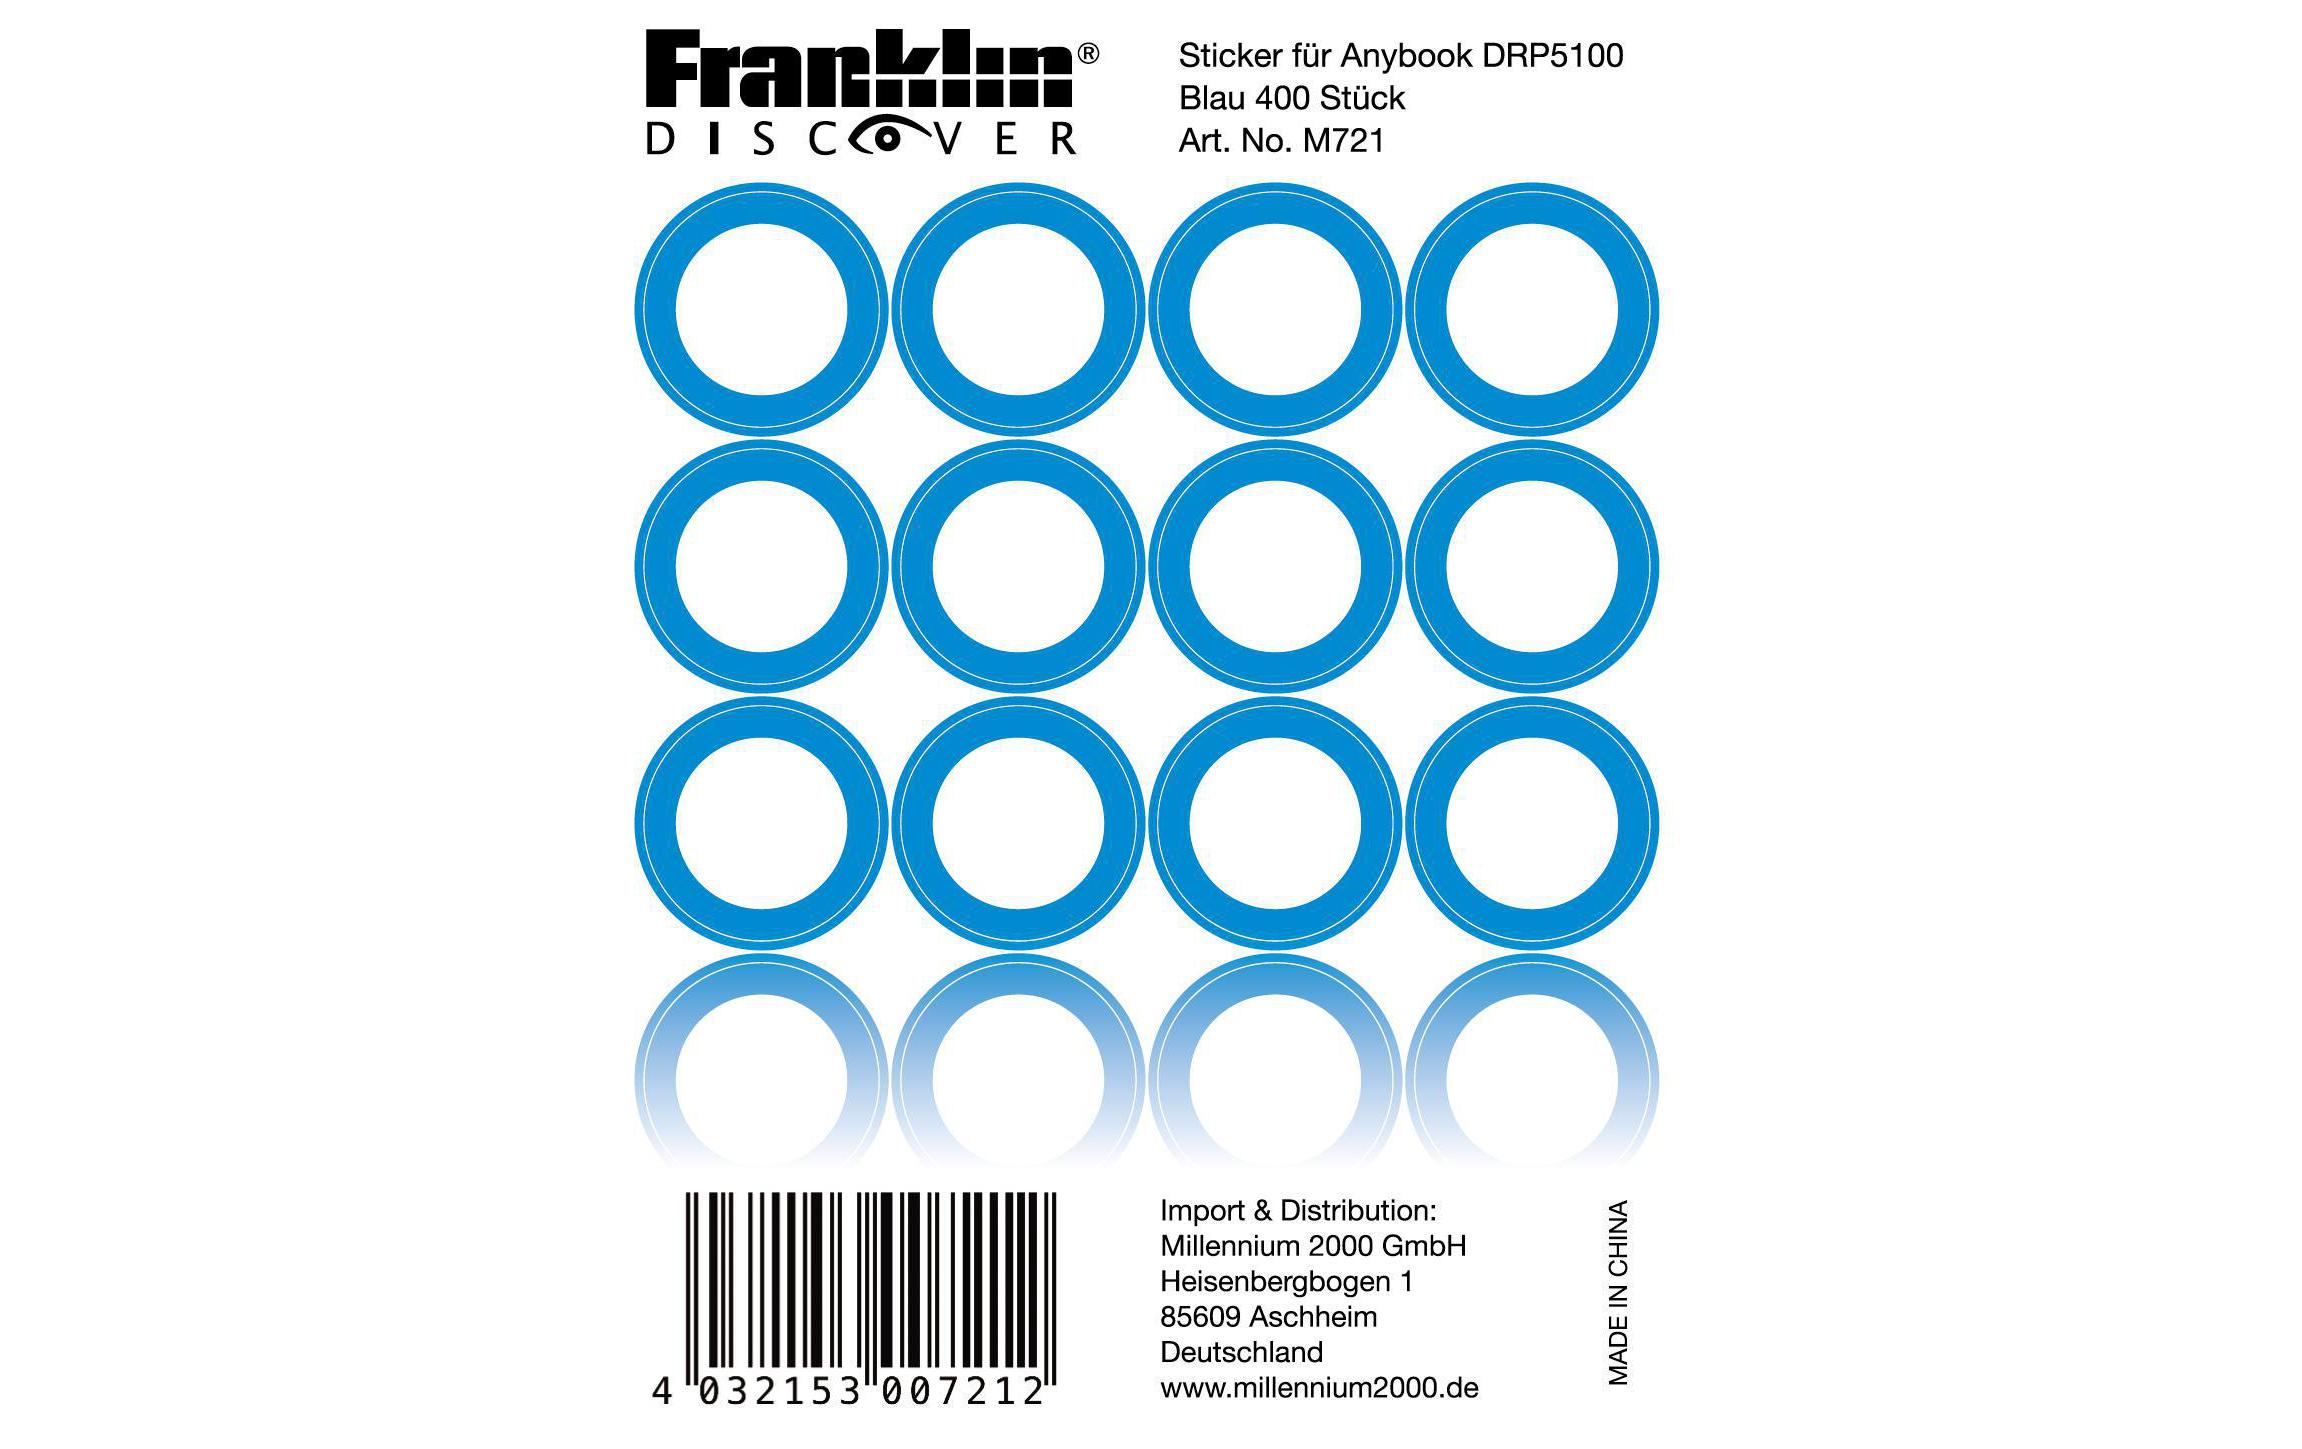 Franklin Sticker für AnyBook DRP-5100 Blau